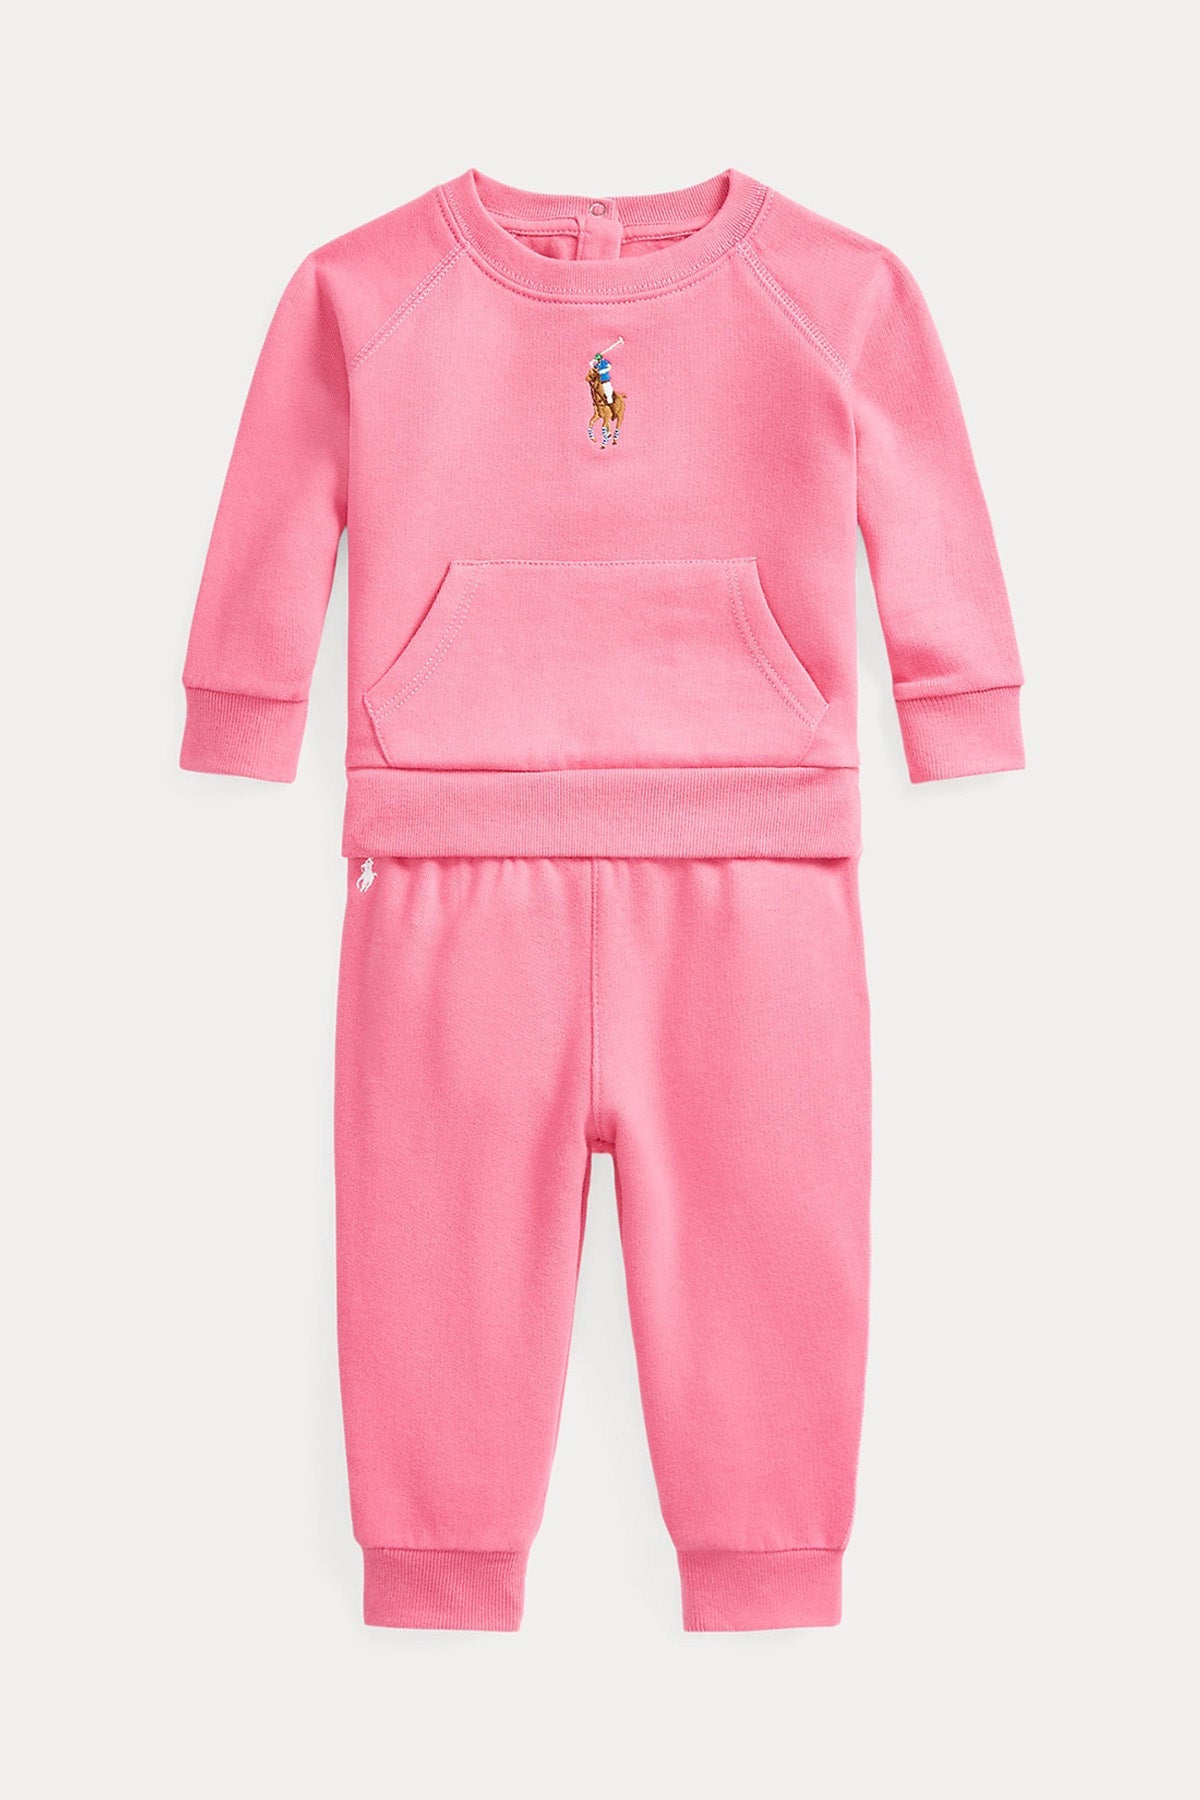 Polo Ralph Lauren Kids 12-18 Aylık Kız Bebek Eşofman Takımı